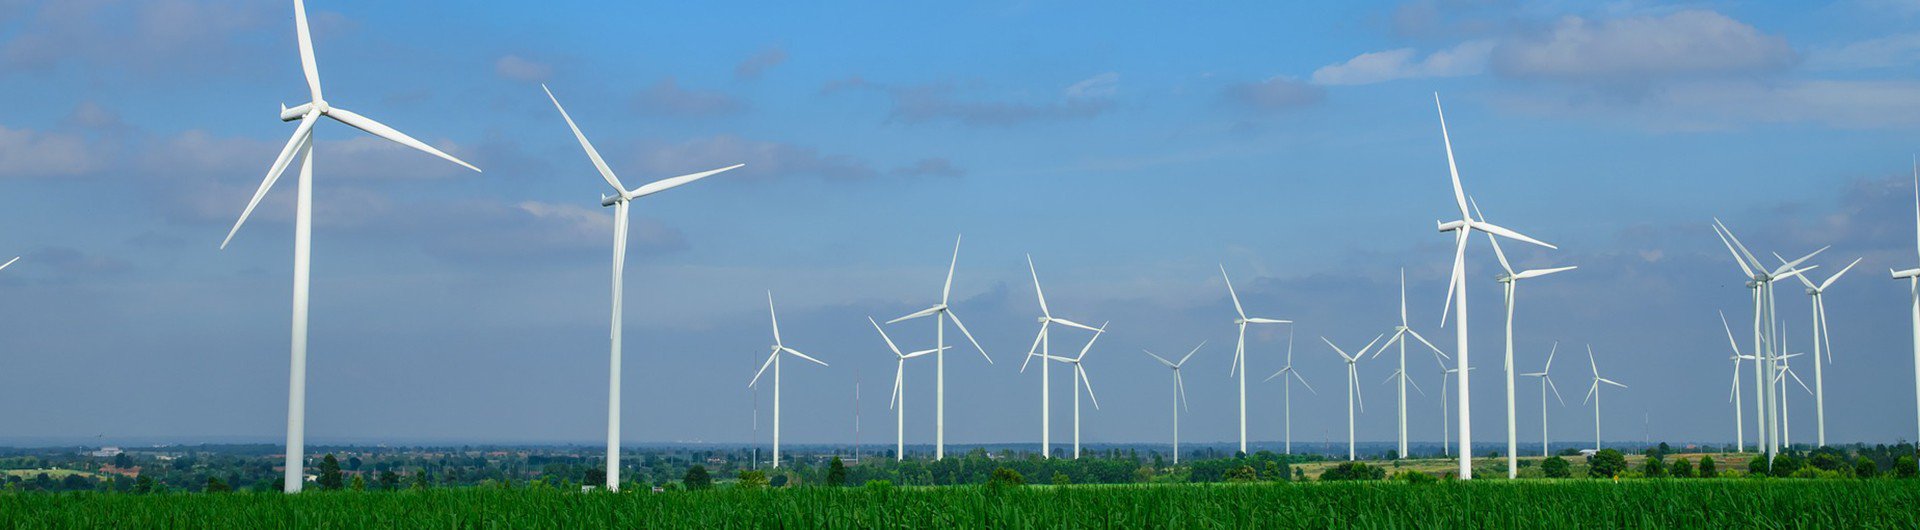 Windenergie-Ausbau stockt